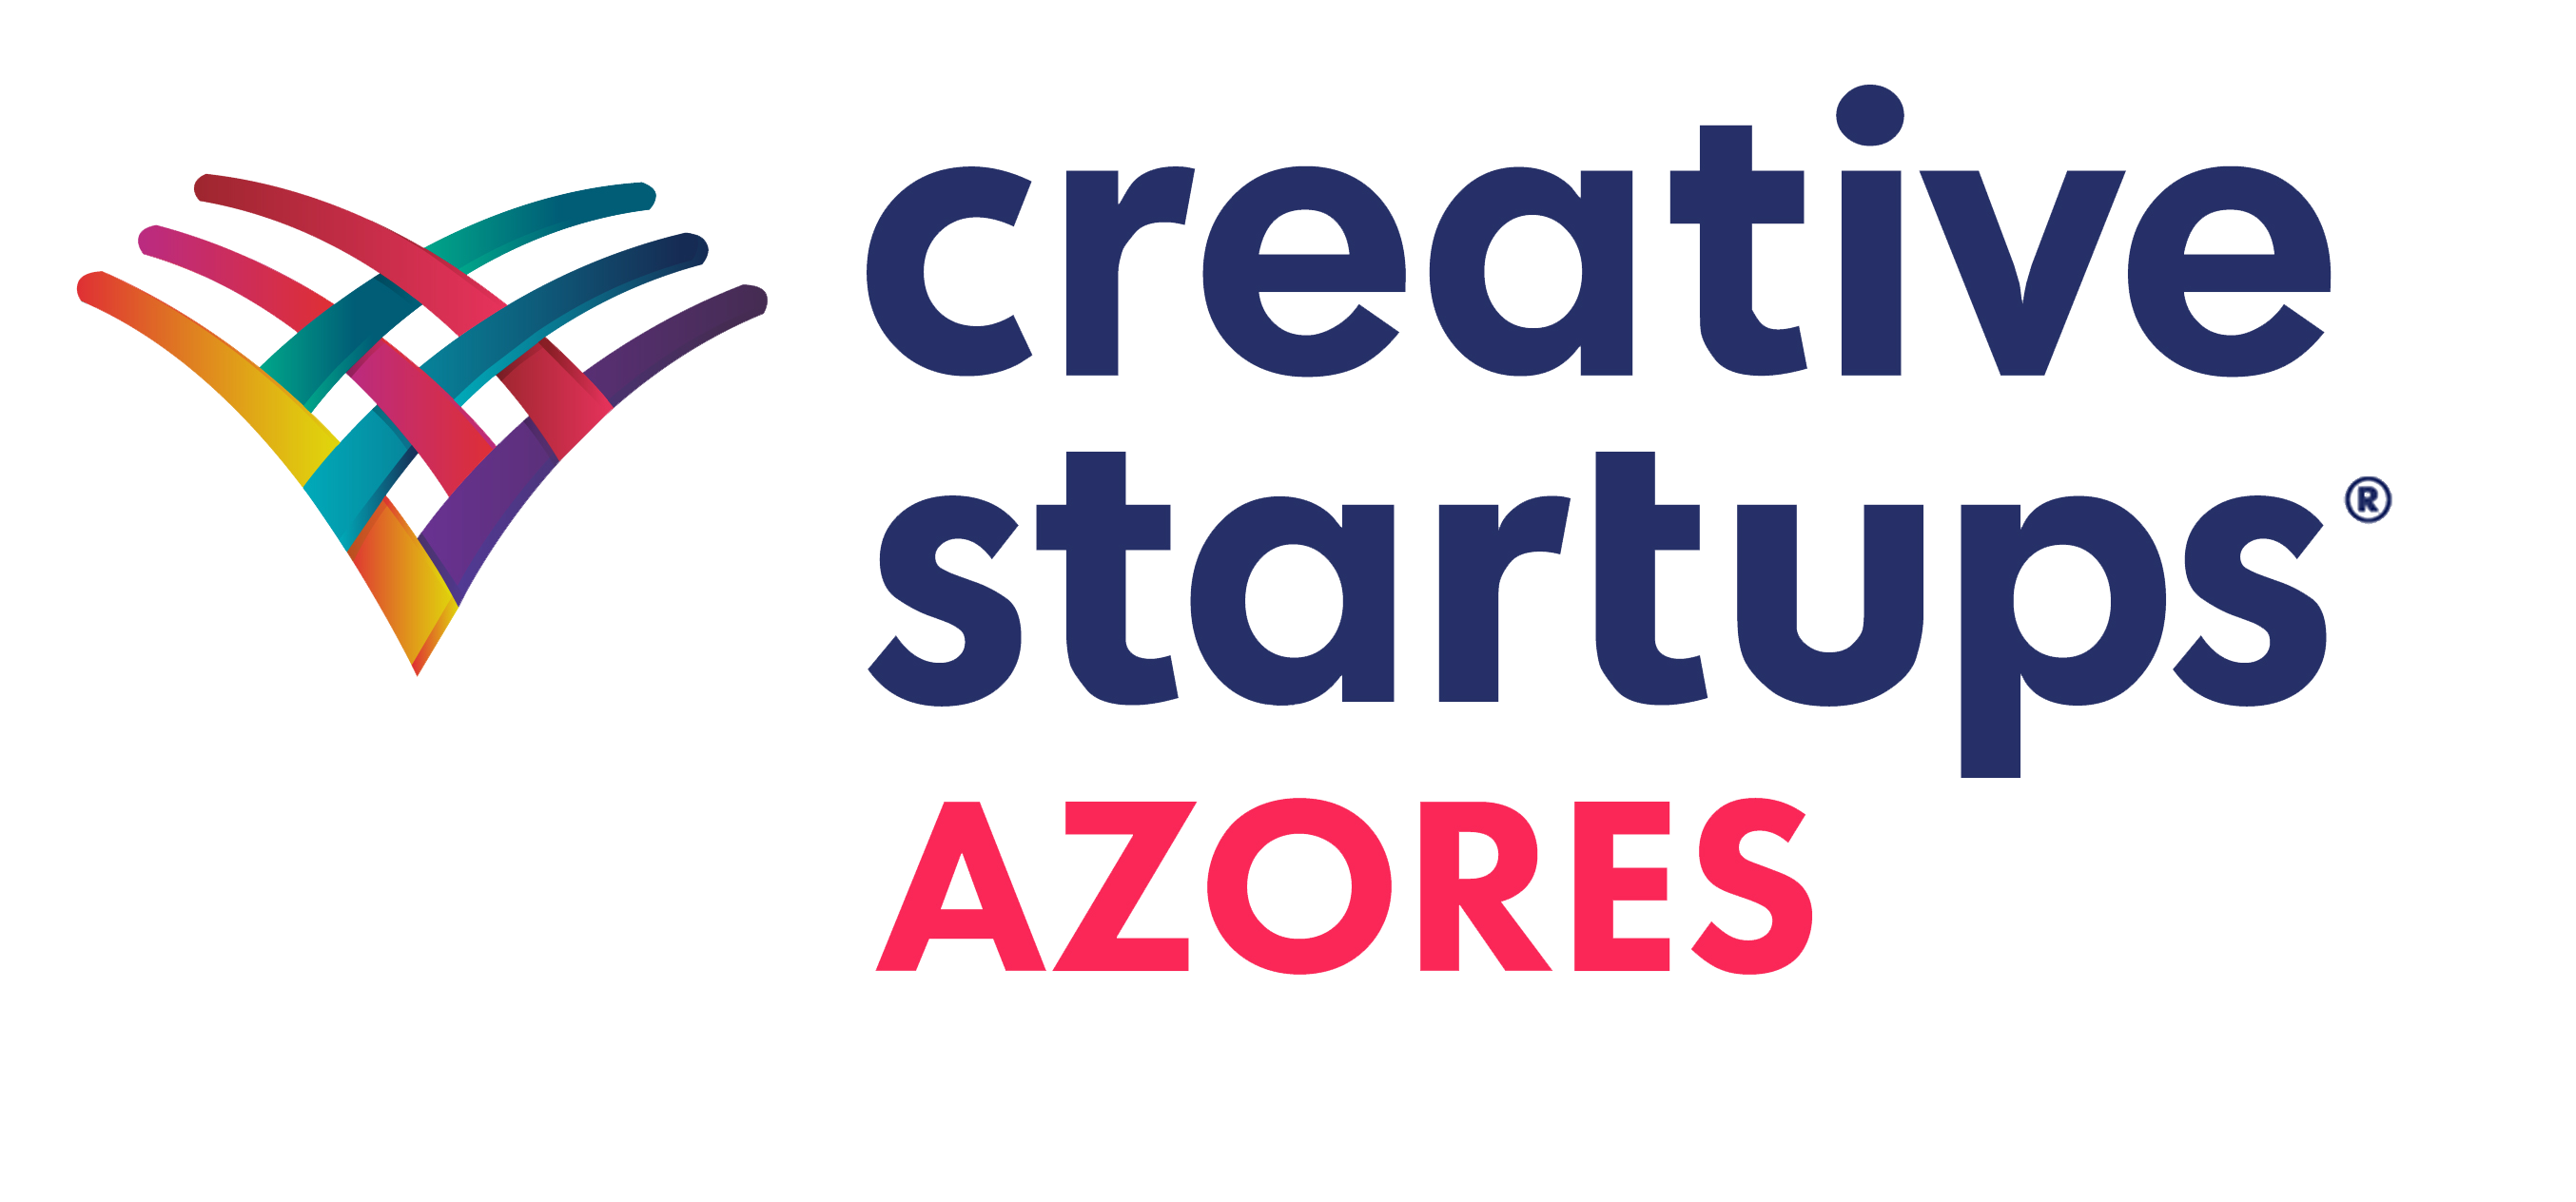 https://www.startupangra.com/wp-content/uploads/2020/02/Azorespng.png